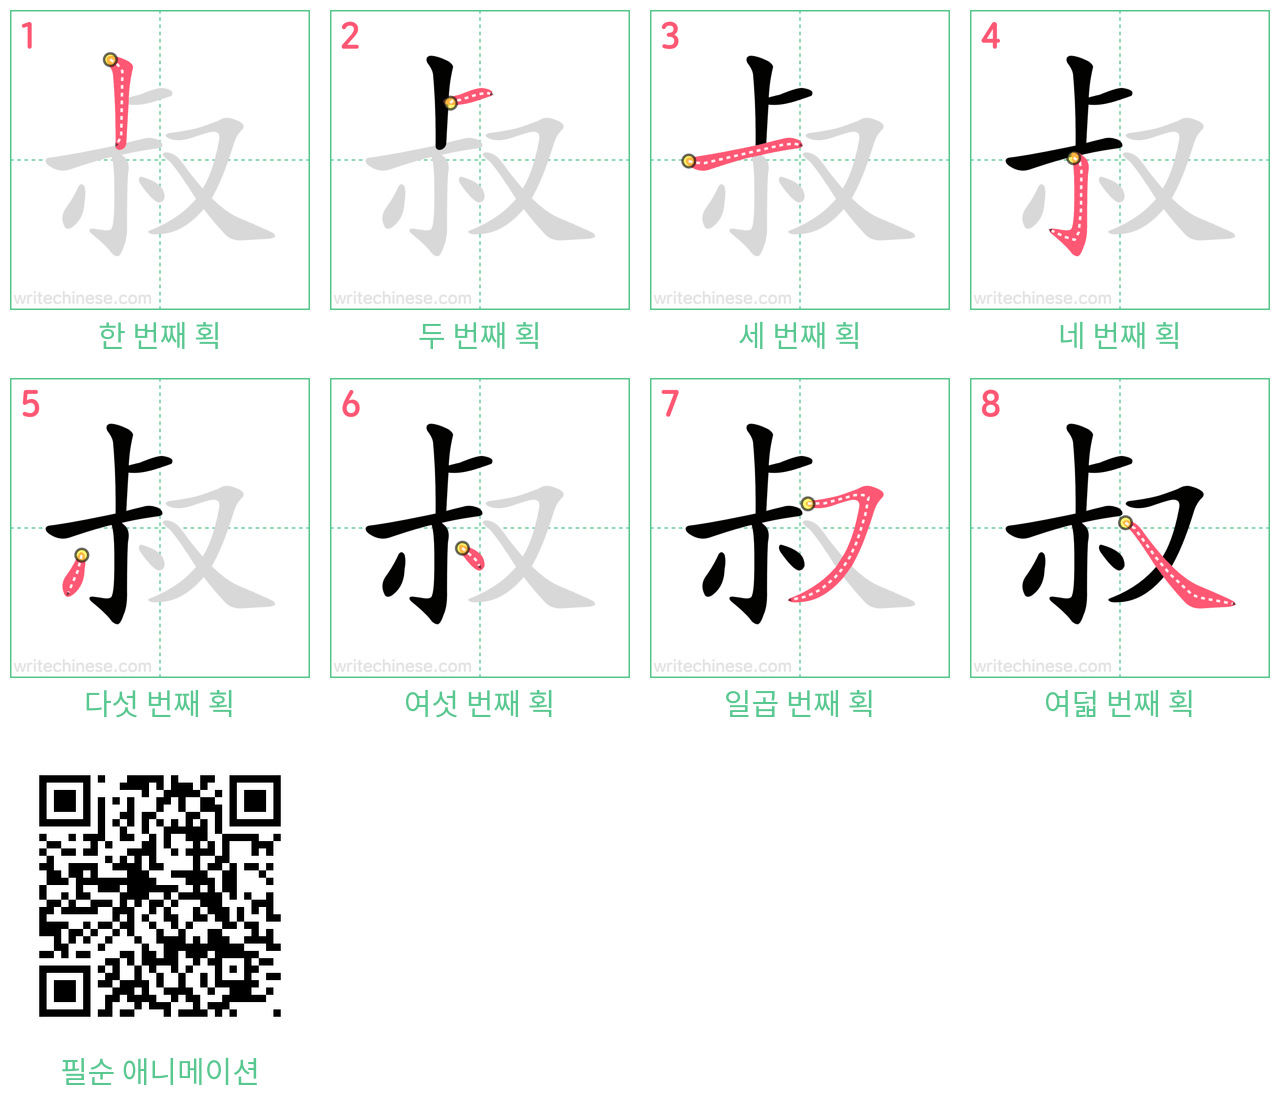 叔 step-by-step stroke order diagrams